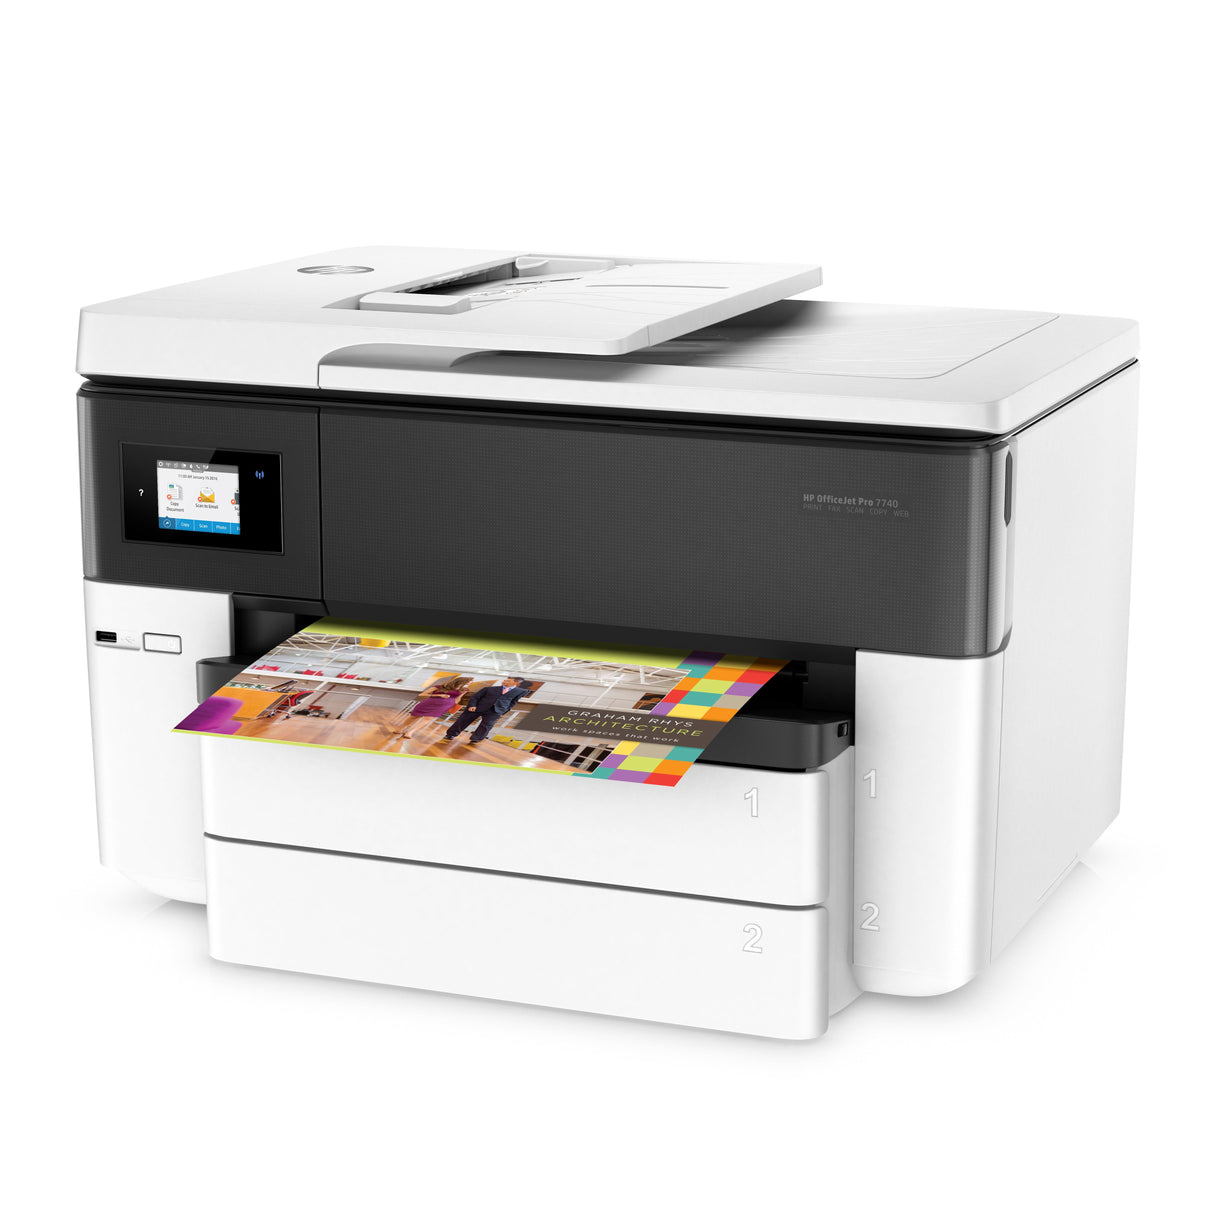 Impresora Hp Officejet Pro 7740, Ideal para Formatos Grandes 11 X 17, incluye Dos Bandejas